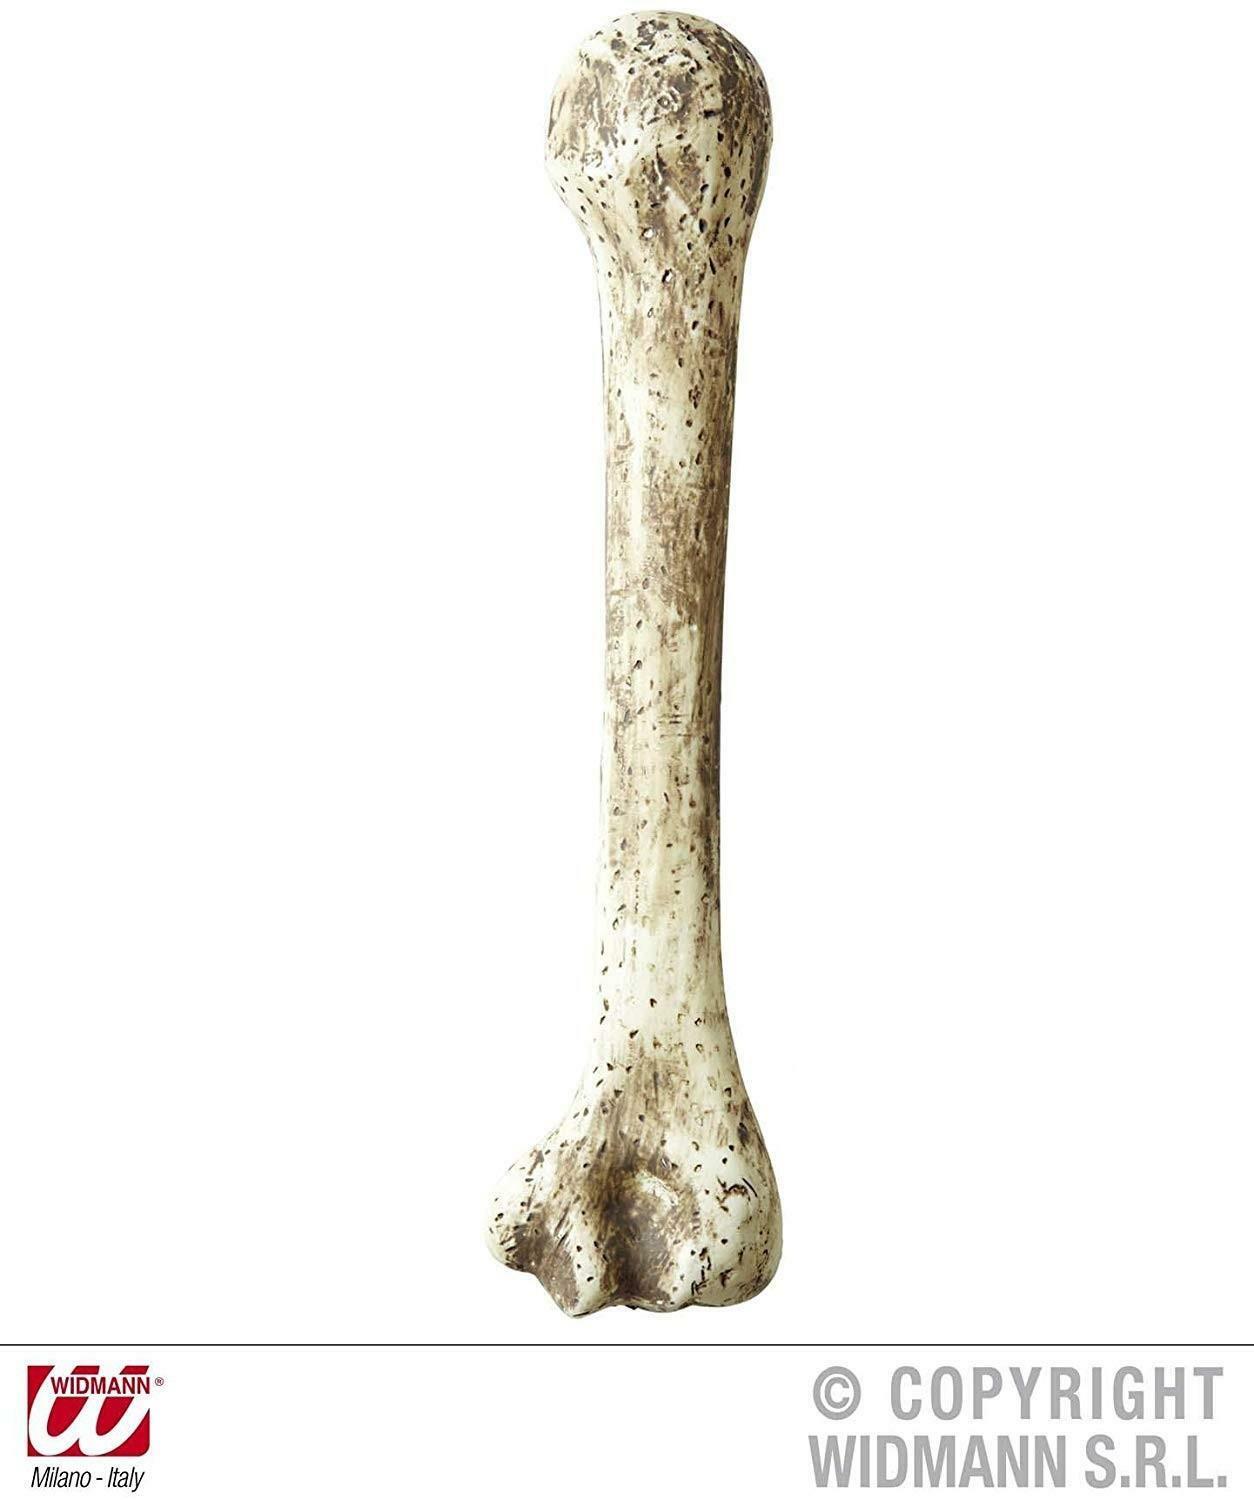 widmann widmann osso preistorico 36 cm